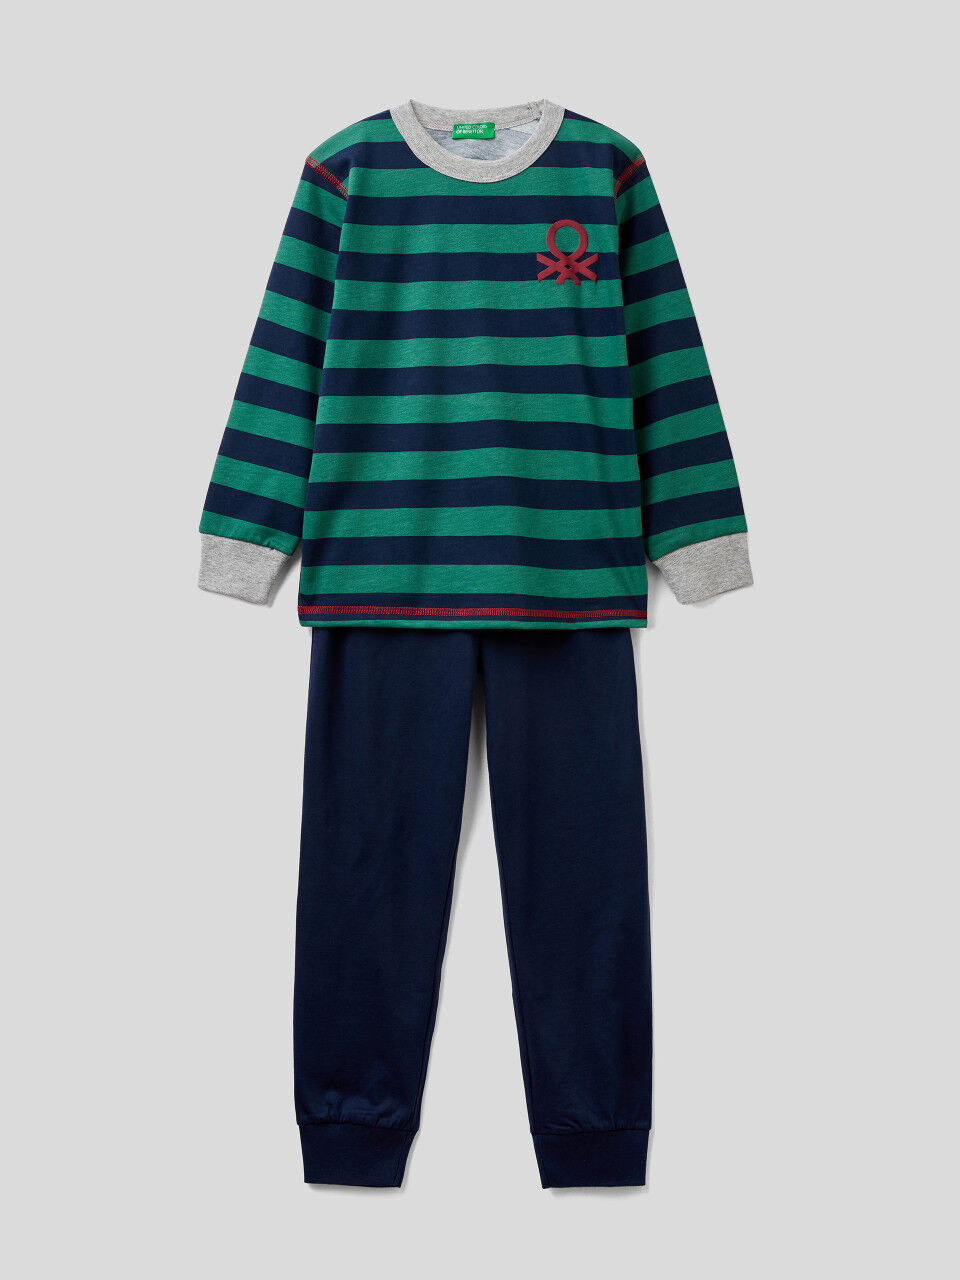 Pyjamas in striped knit